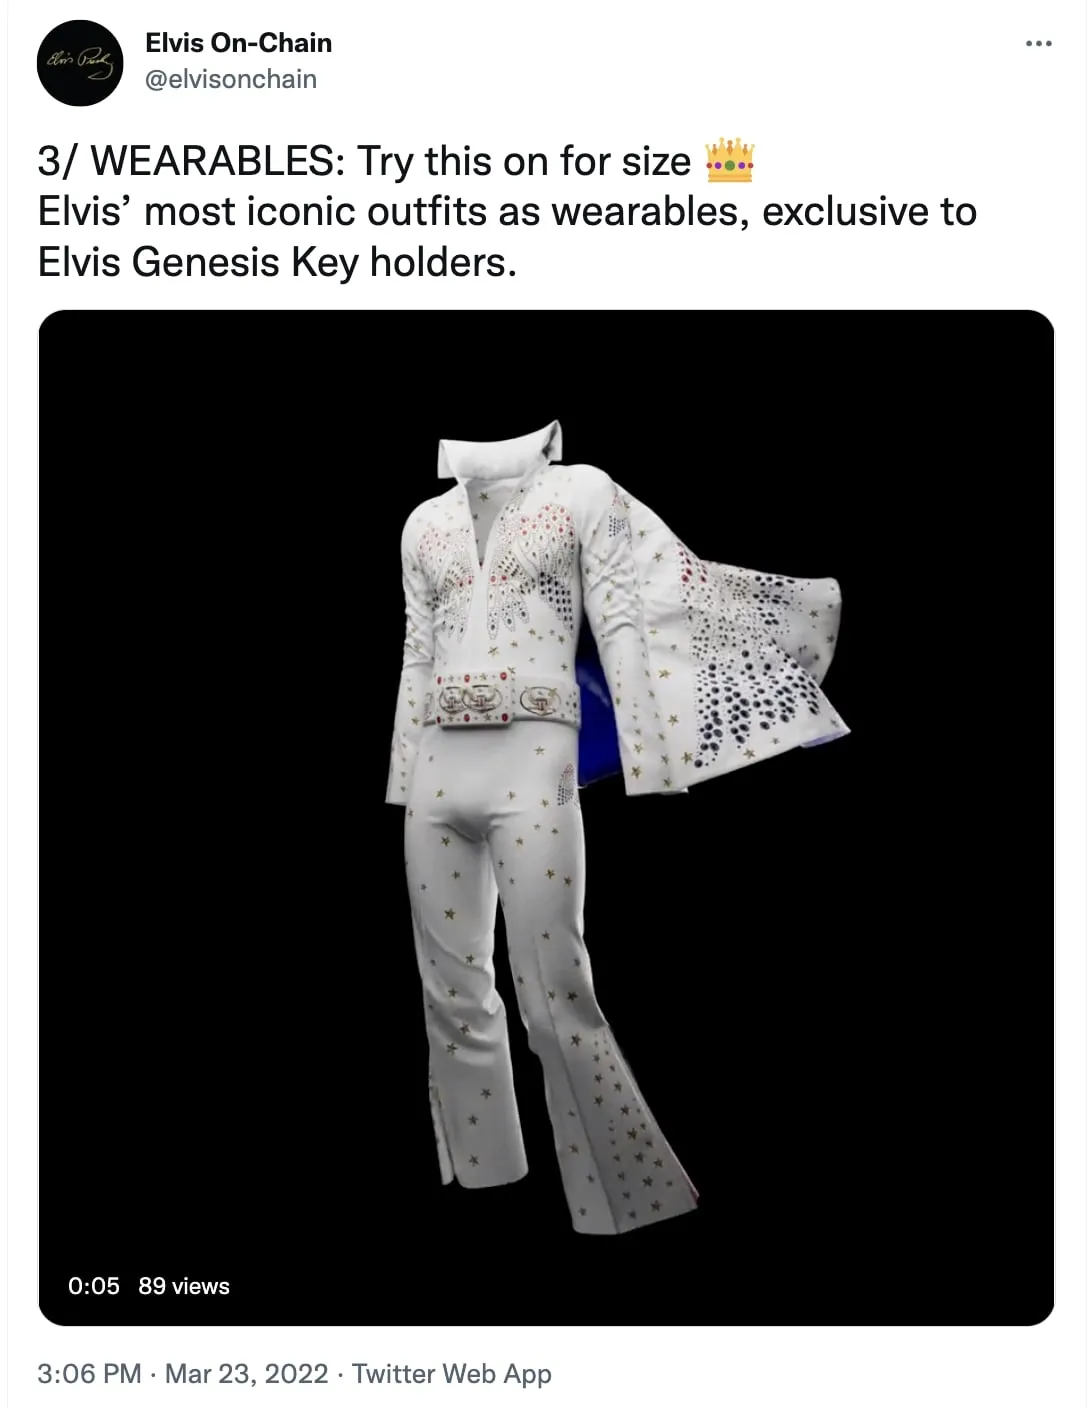 Elvis On-Chain project's Elvis Presley metaverse wearbales